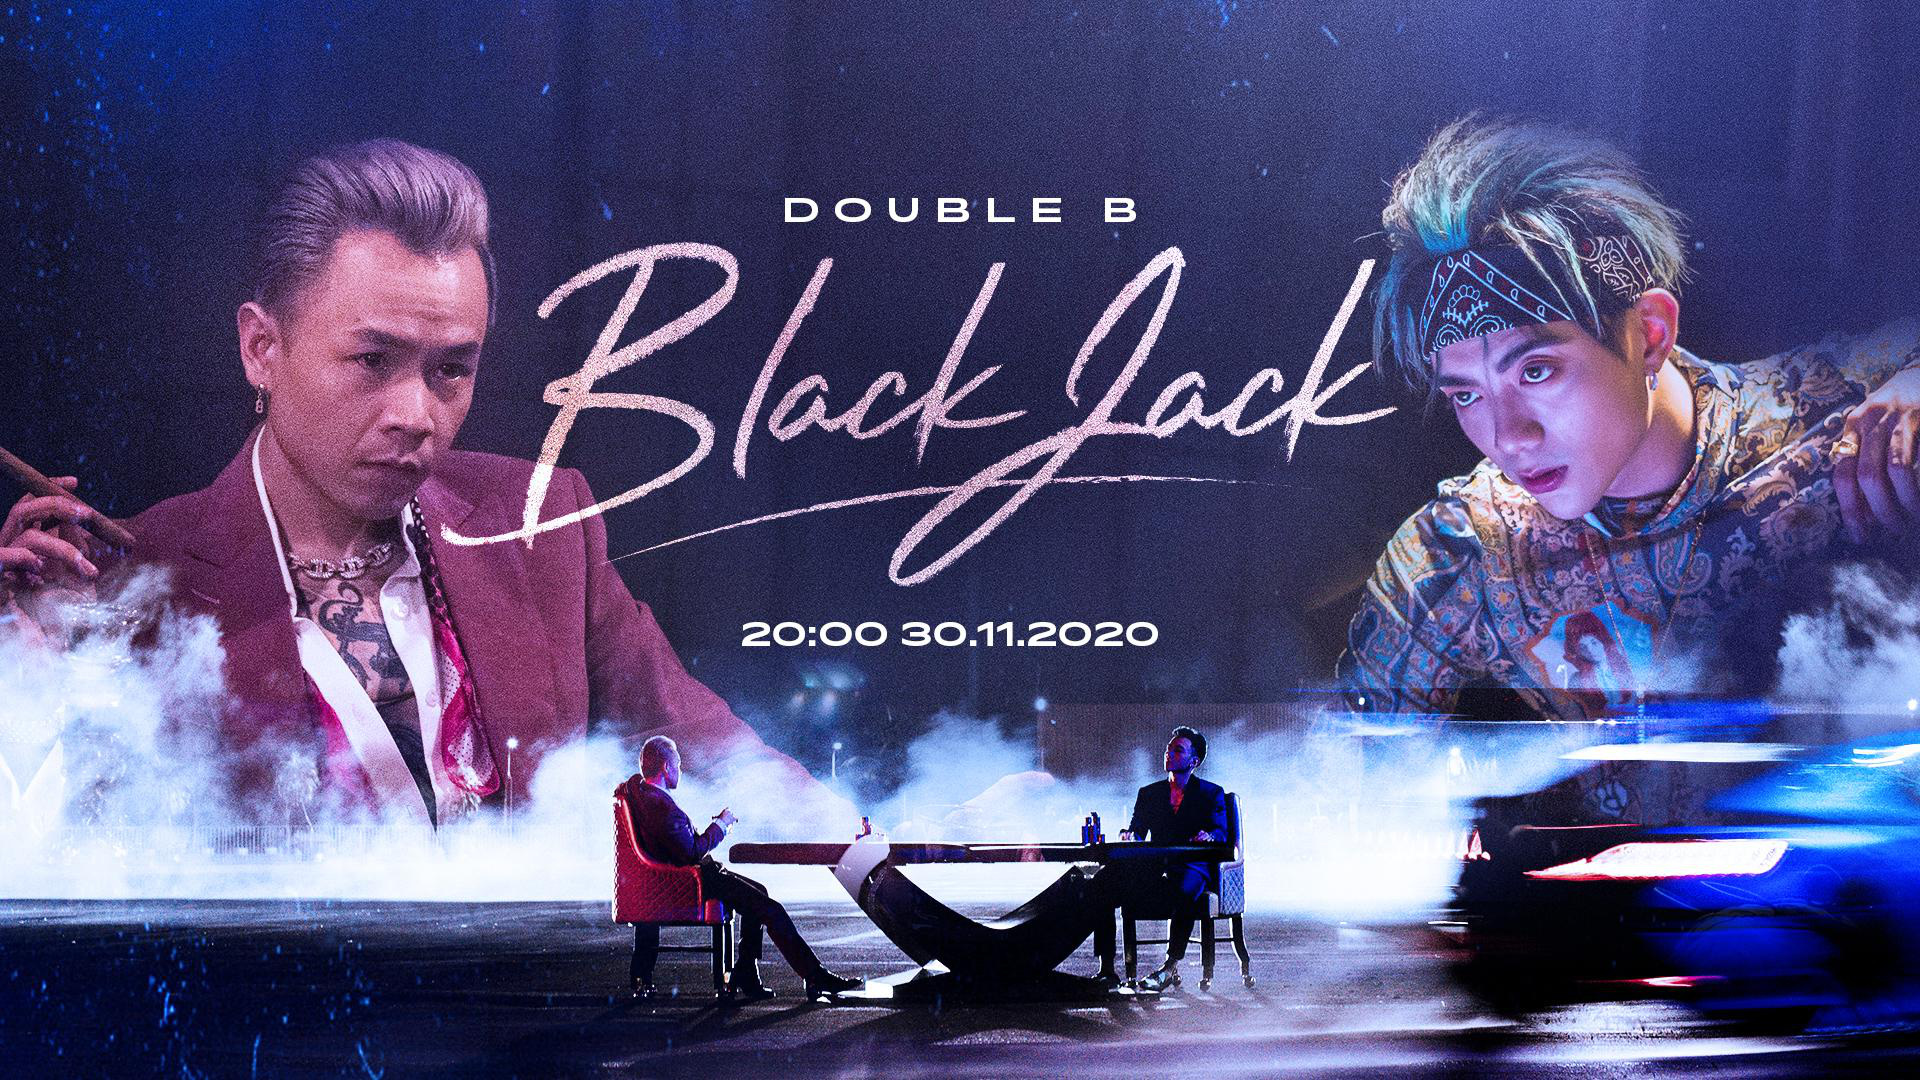 Vừa ra mắt, fan đã xôn xao plot twist trong MV mới: SOOBIN và Binz sứt đầu mẻ trán vì một cô gái, BlackJack sẽ có tiếp phần 2? - Ảnh 1.